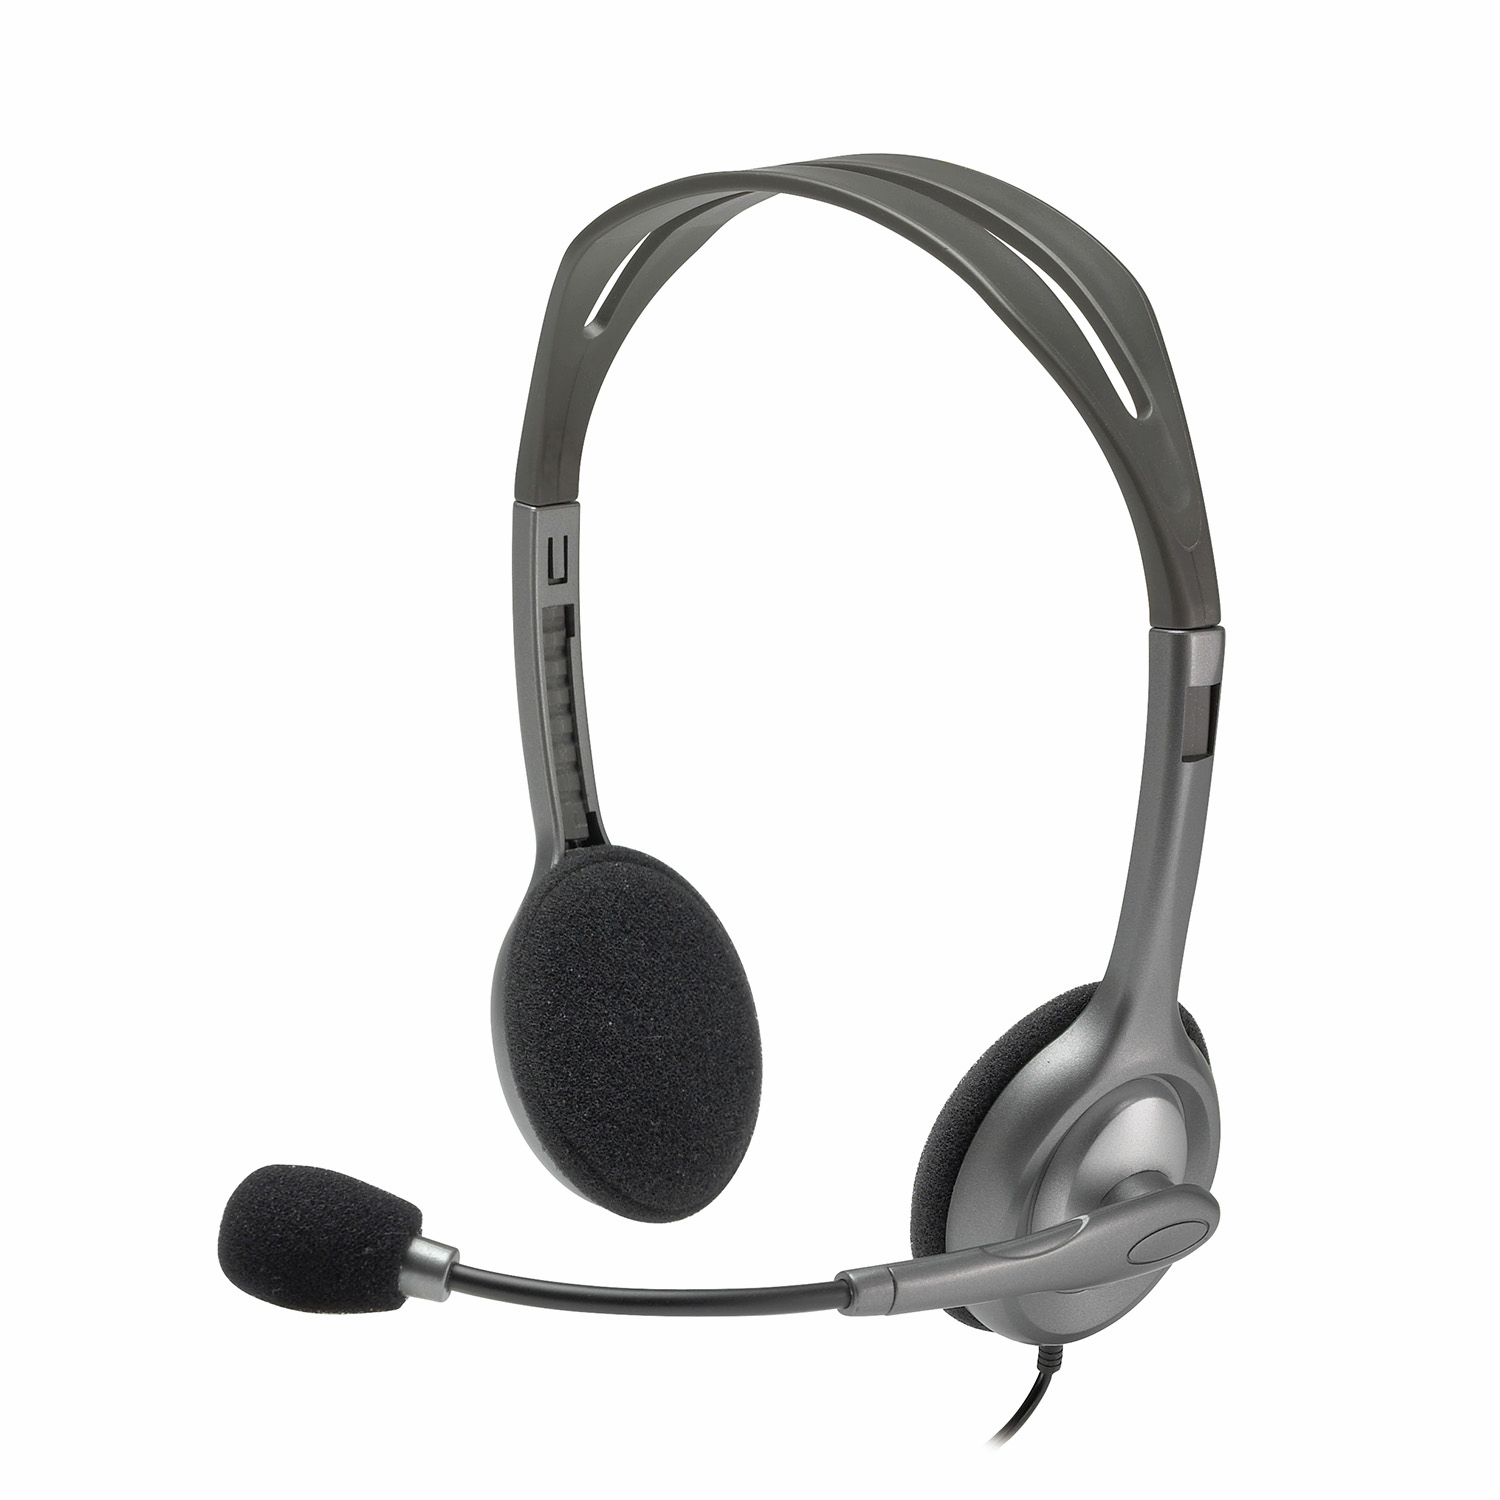 Проводная гарнитура Logitech H110 Stereo Headset, серый/черный (981-000271/981-000459/981-000472)